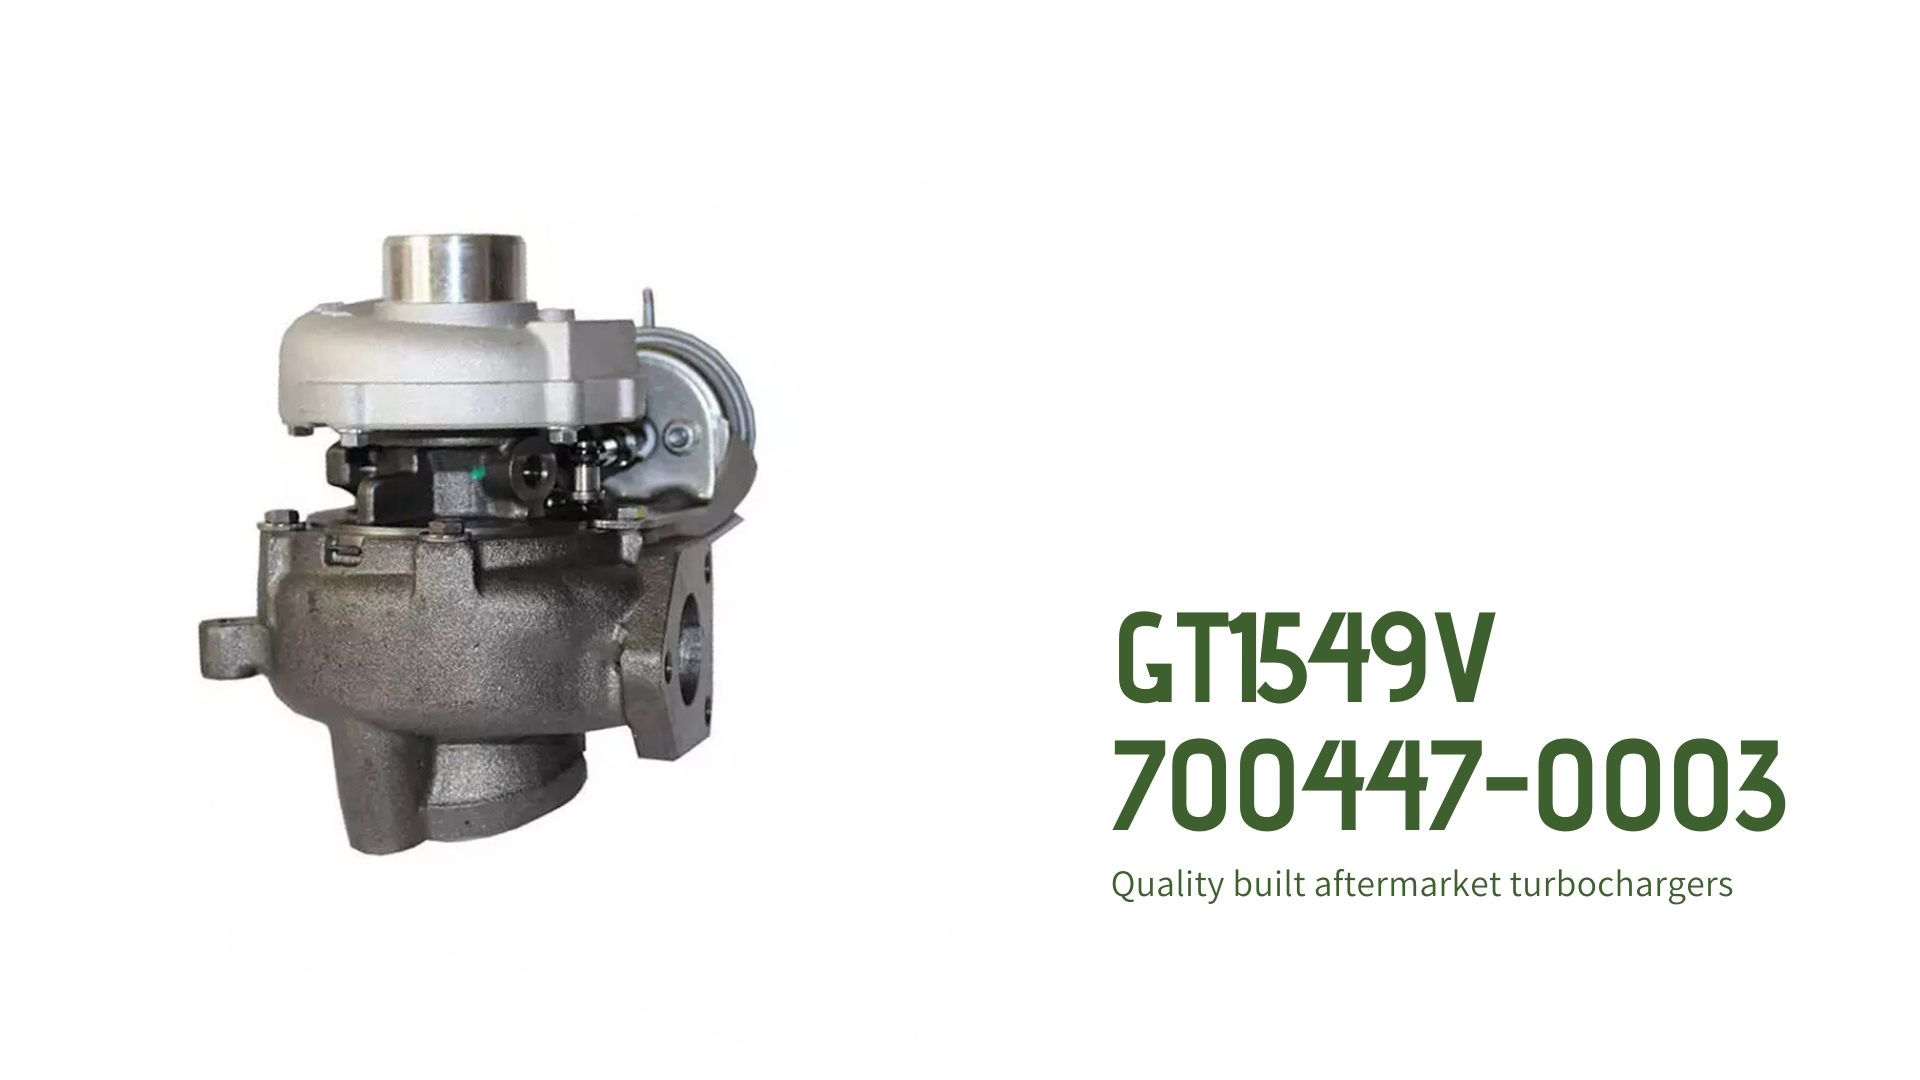 GT1549V Turbocharger 700447-0003